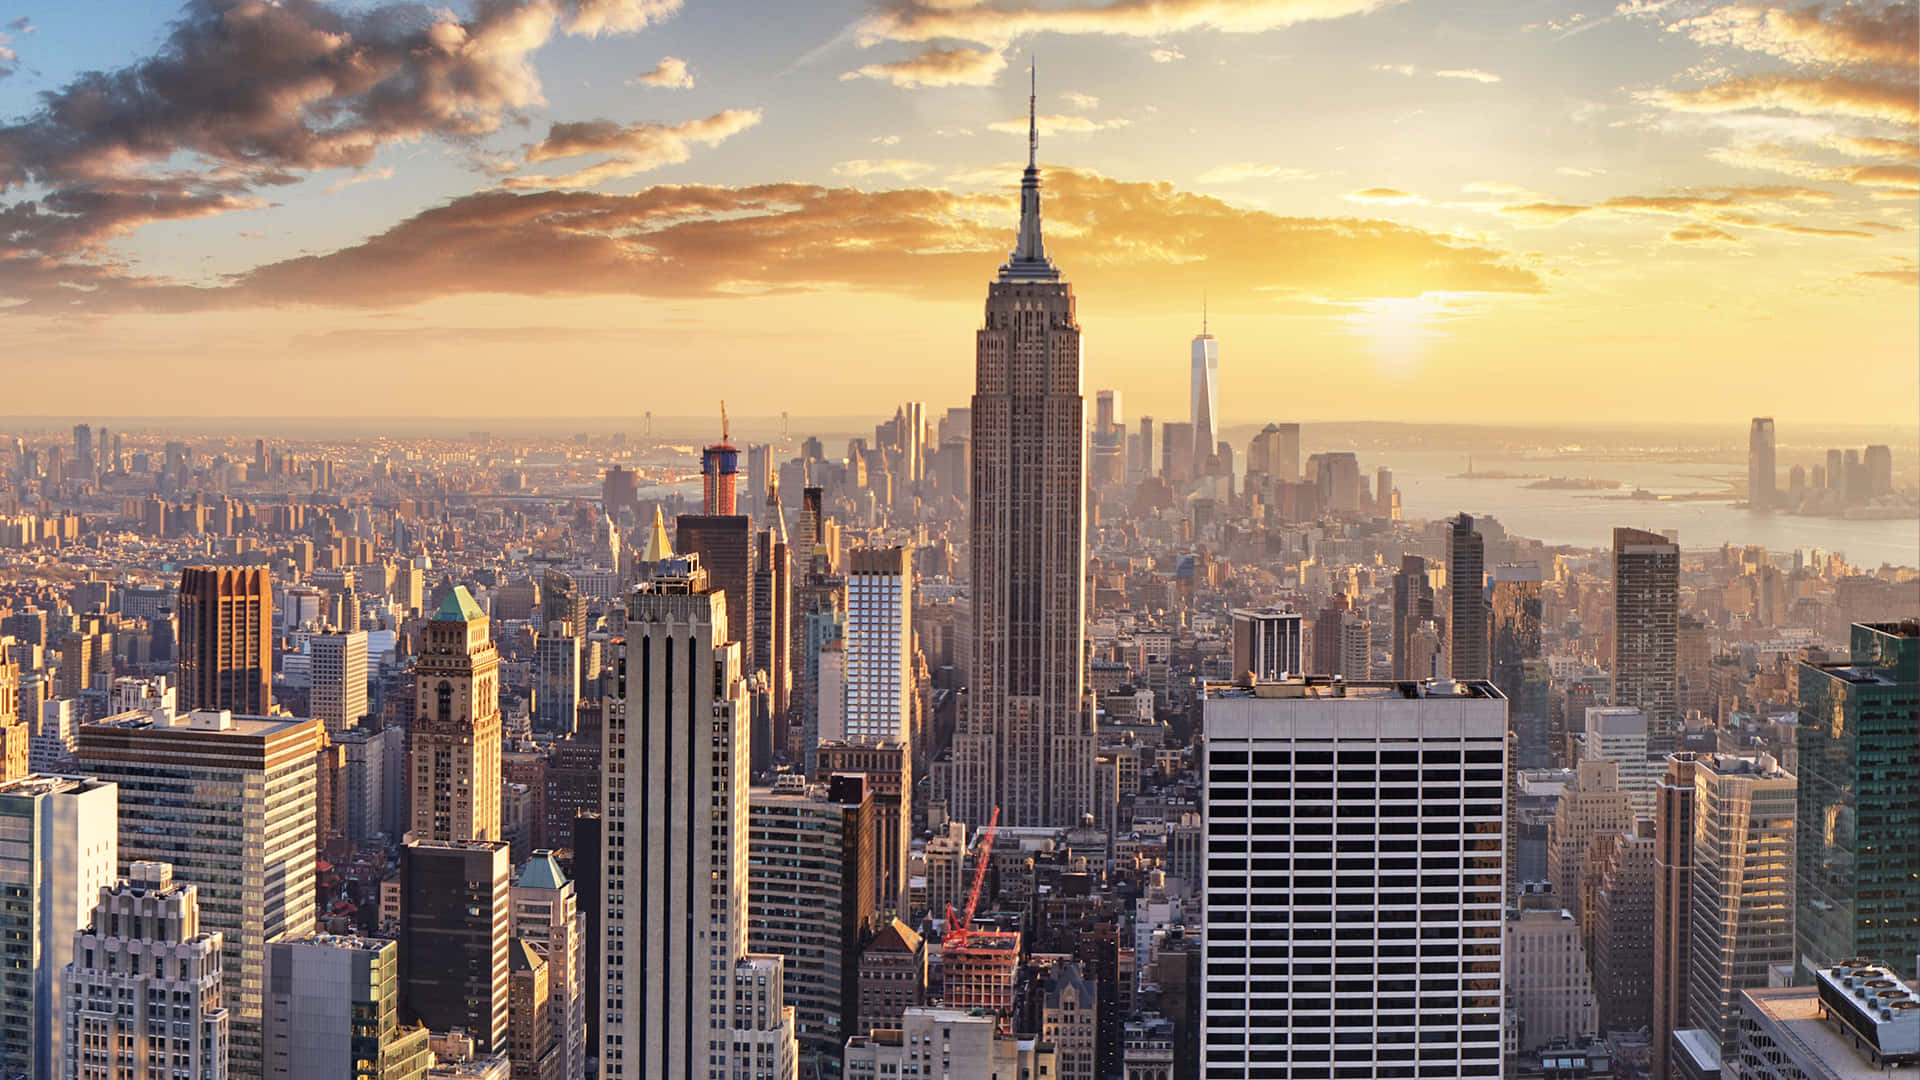 Nyyorkesisk billedskønne himmelblå skyer gløder over byens horisont.